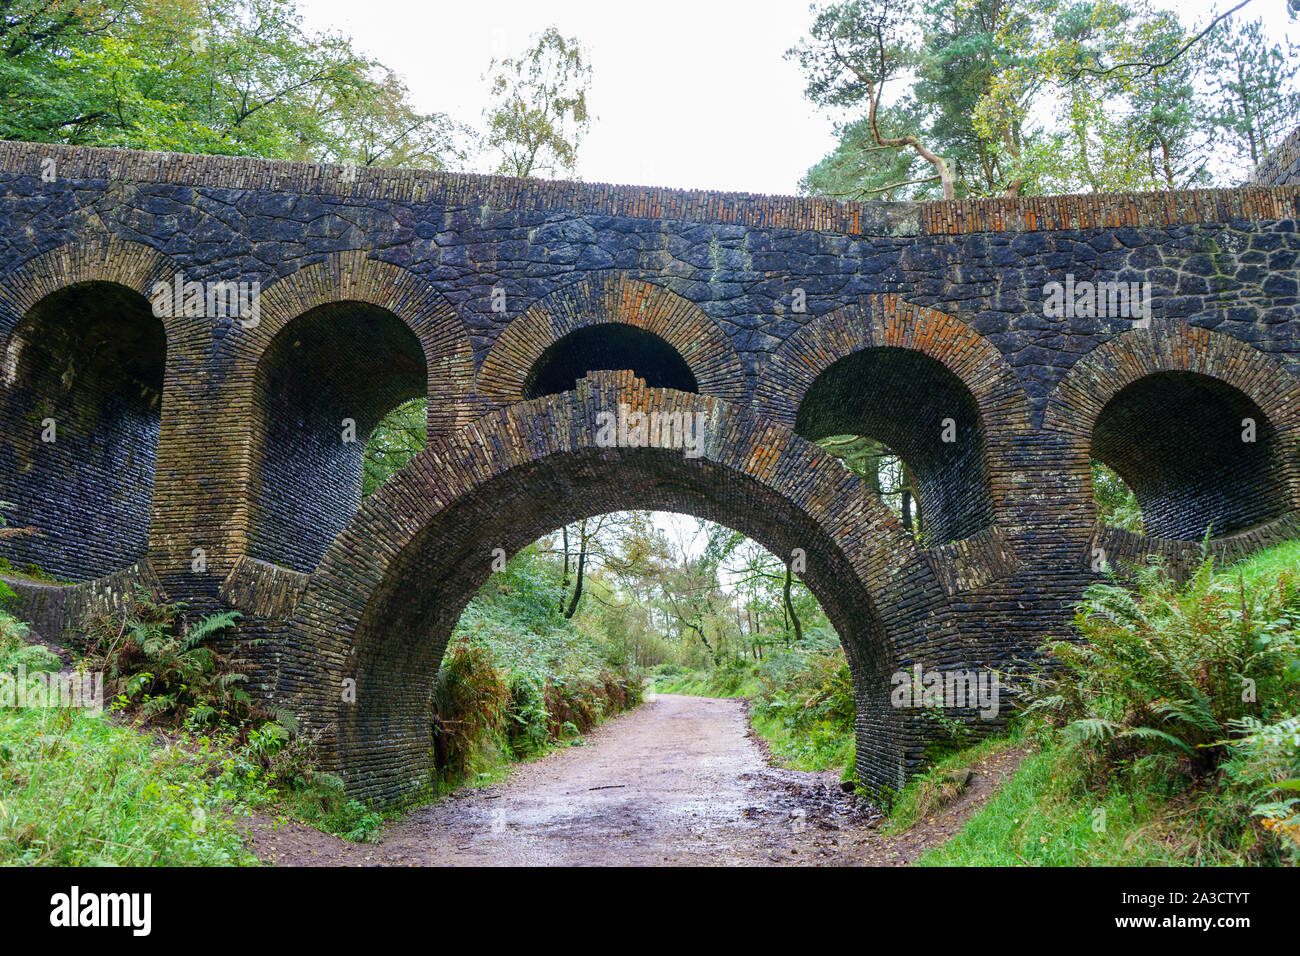 old stone bridge in garden Stock Photo